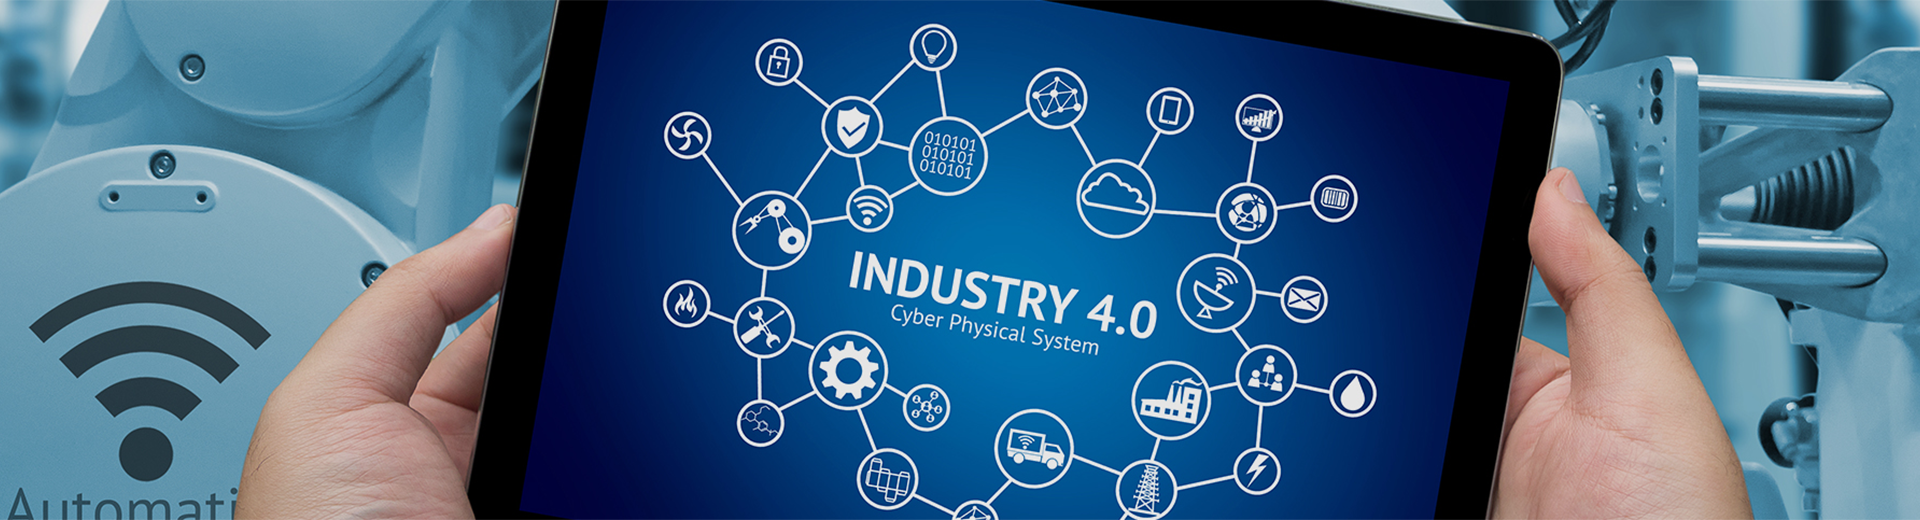 Индустрия 4.0, что же это и как это работает?